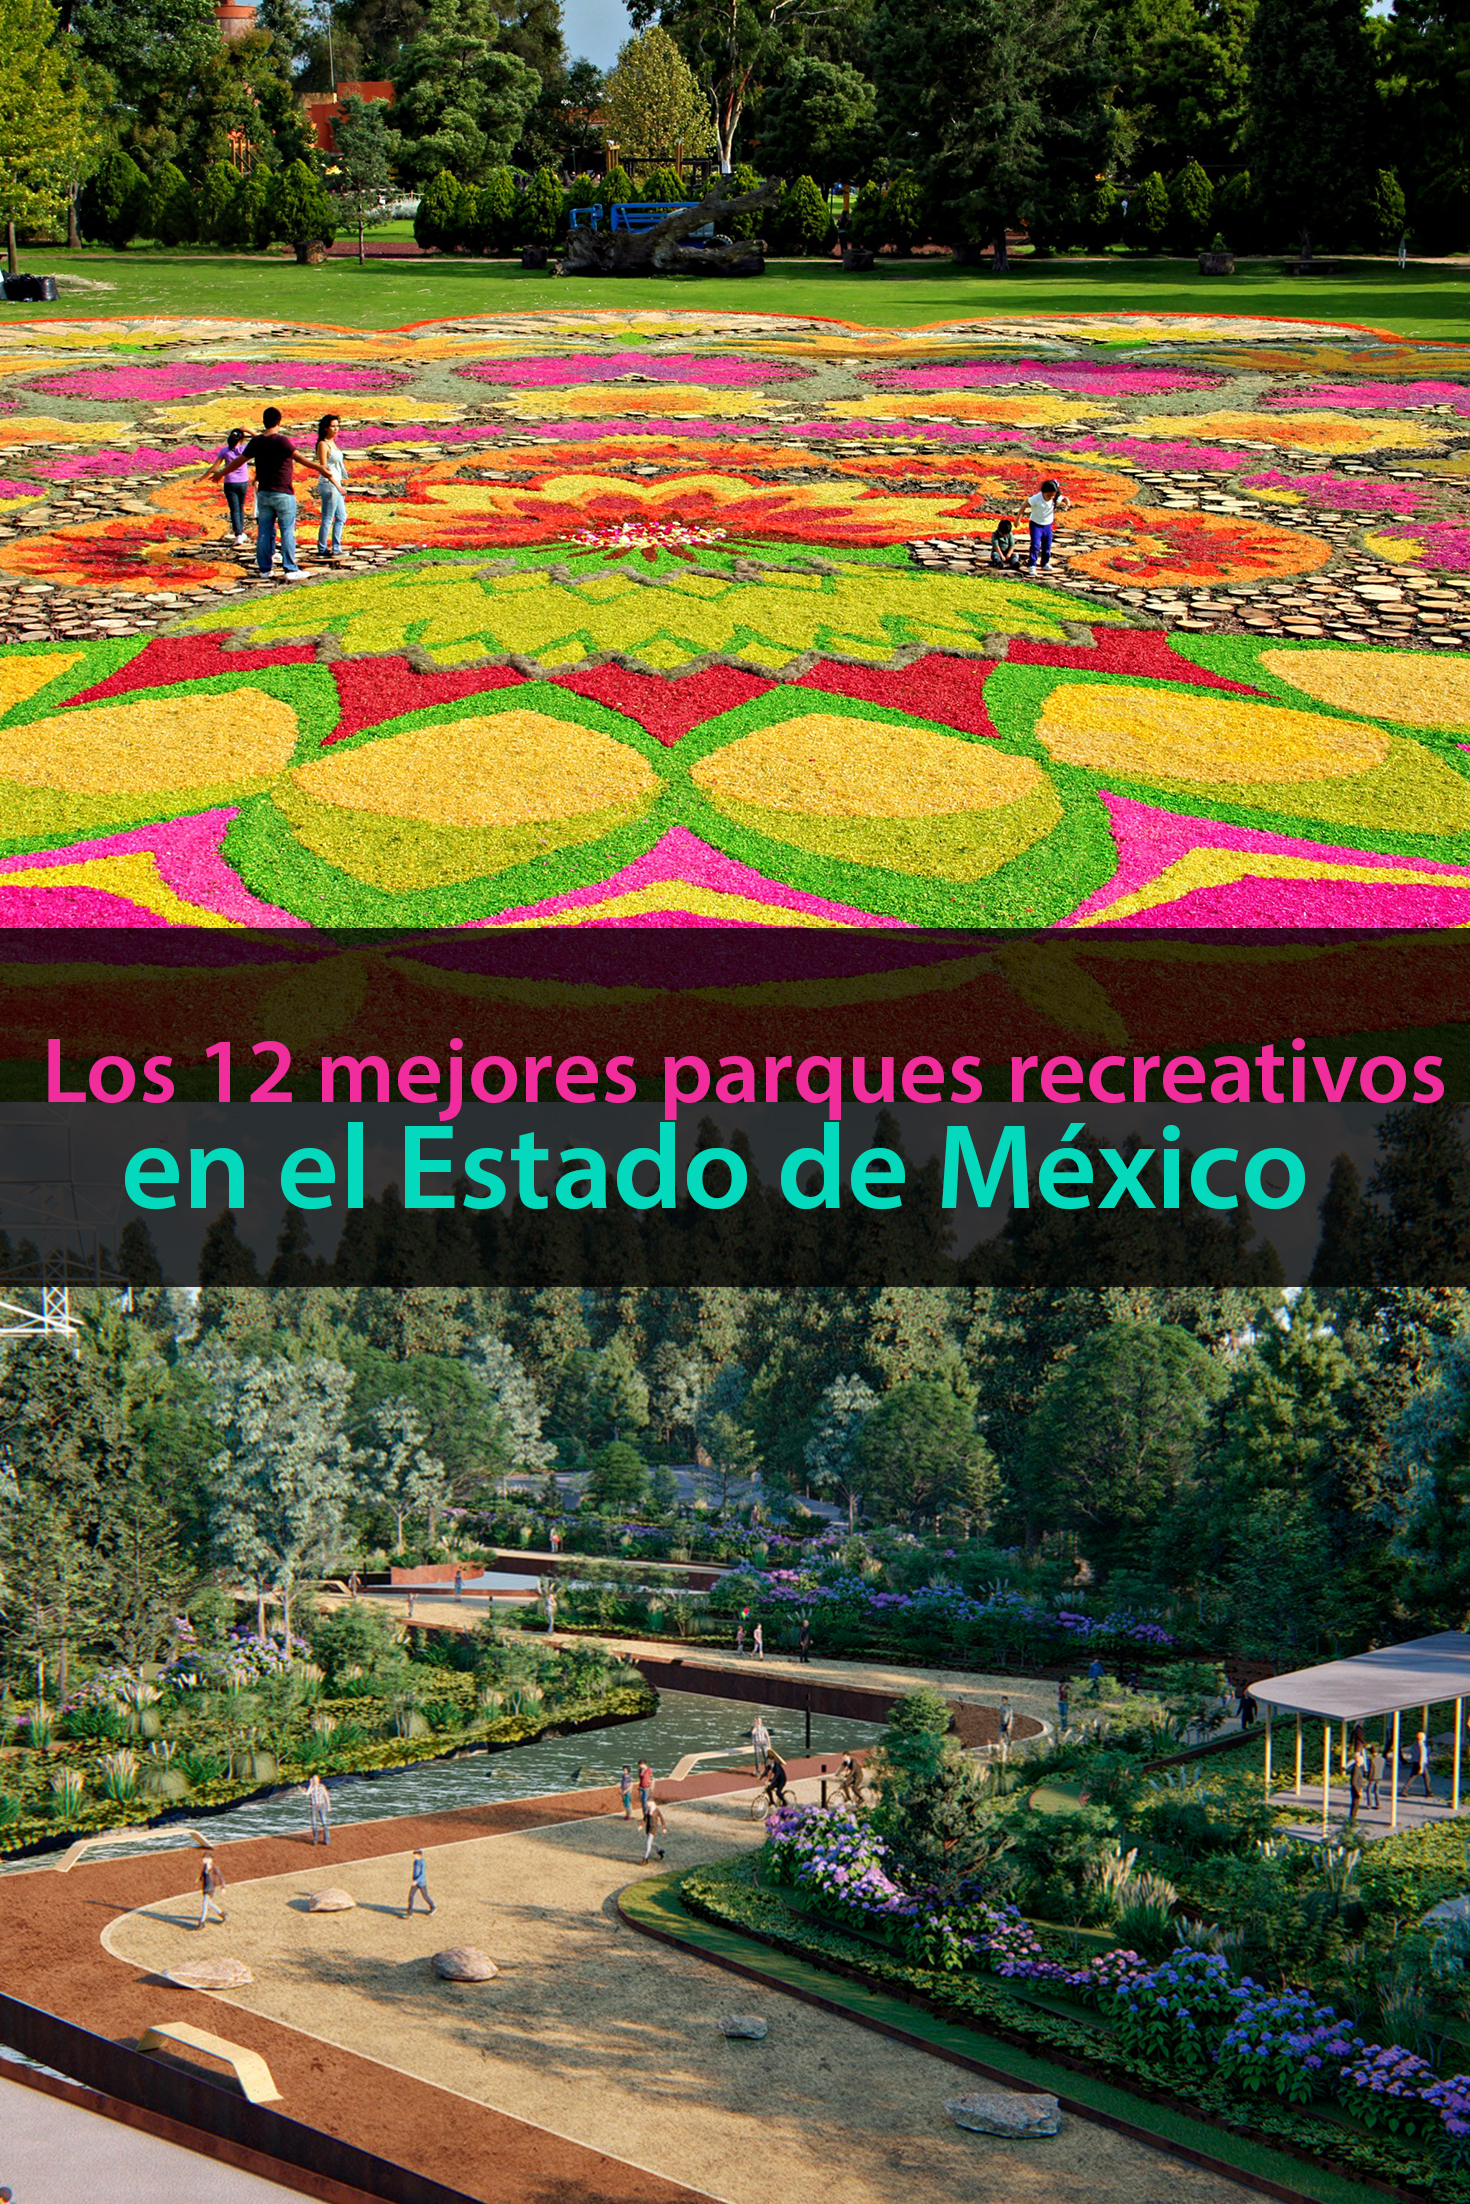 Los 12 mejores parques recreativos en el Estado de México